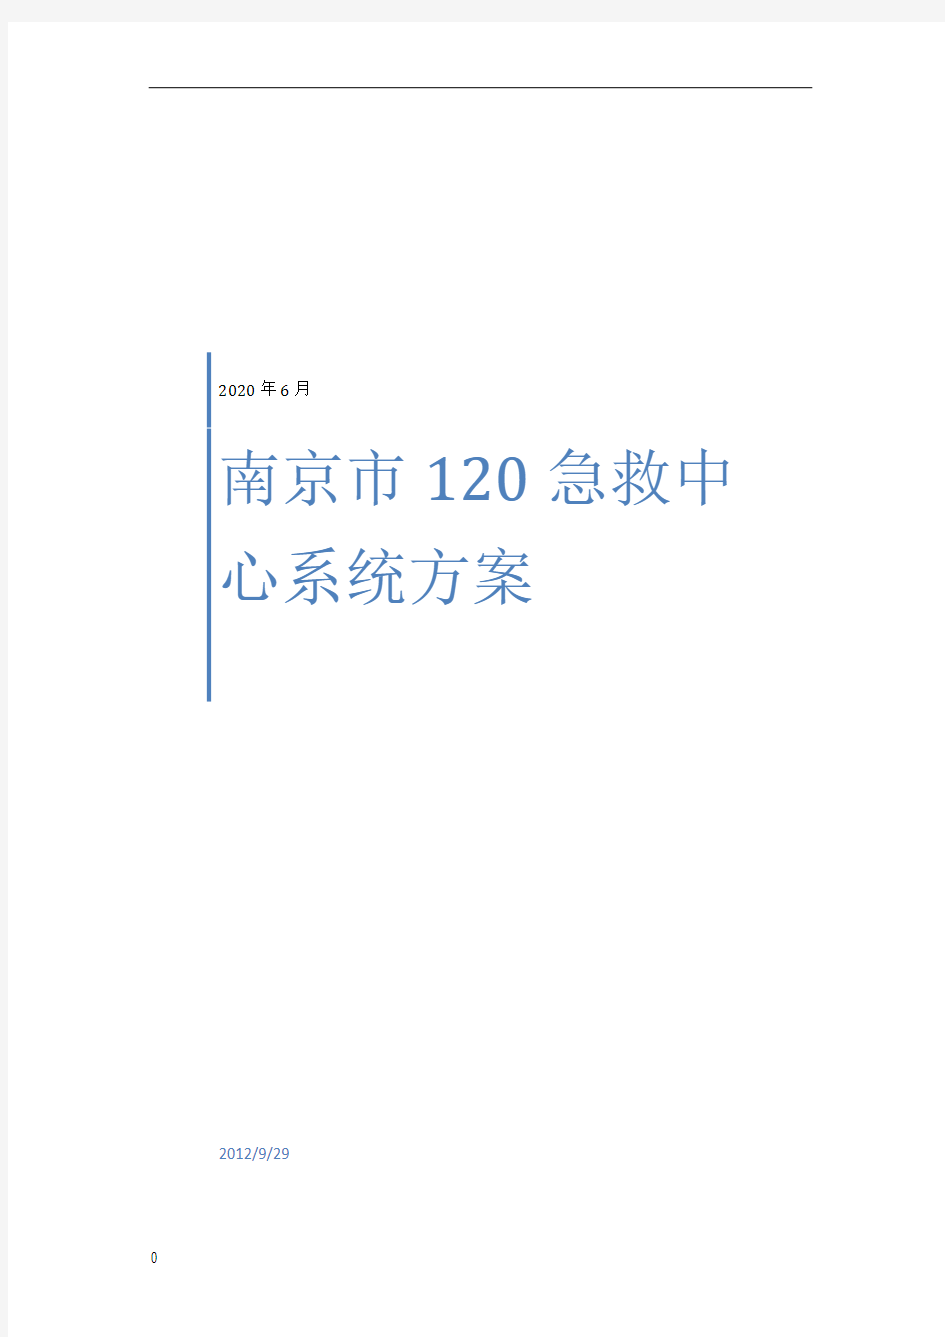 南京120急救指挥中心系统方案